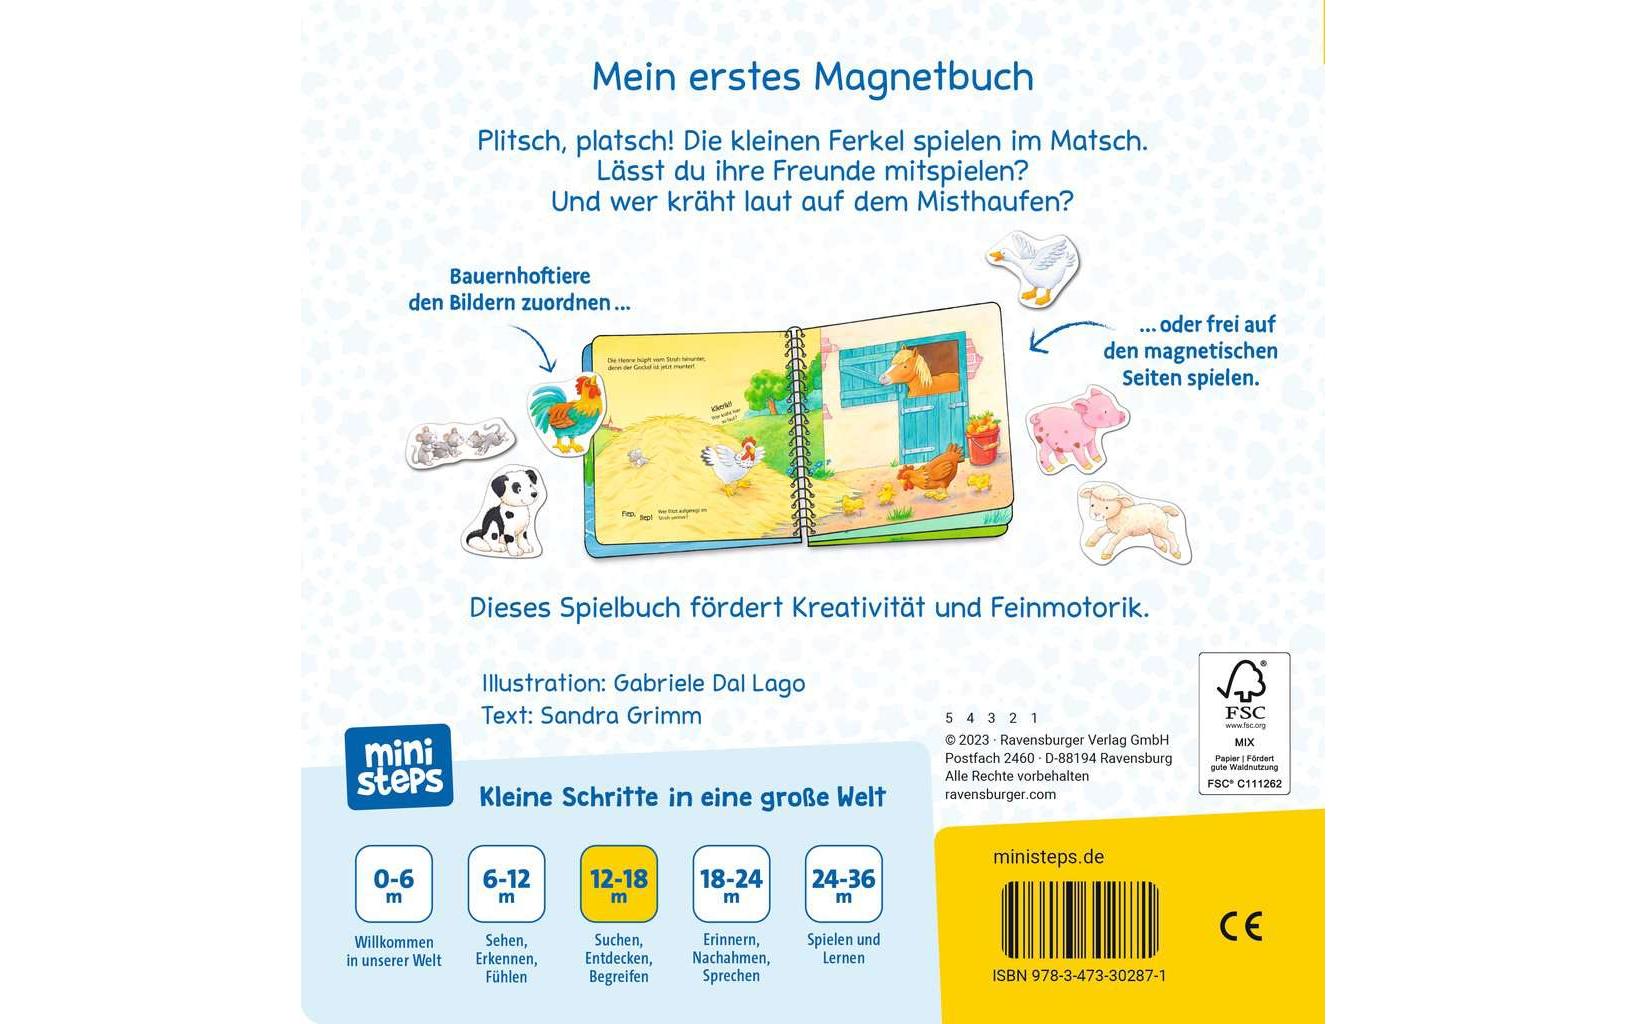 Ravensburger ministeps: Mein erstes Magnetbuch Wer spielt mit wem?